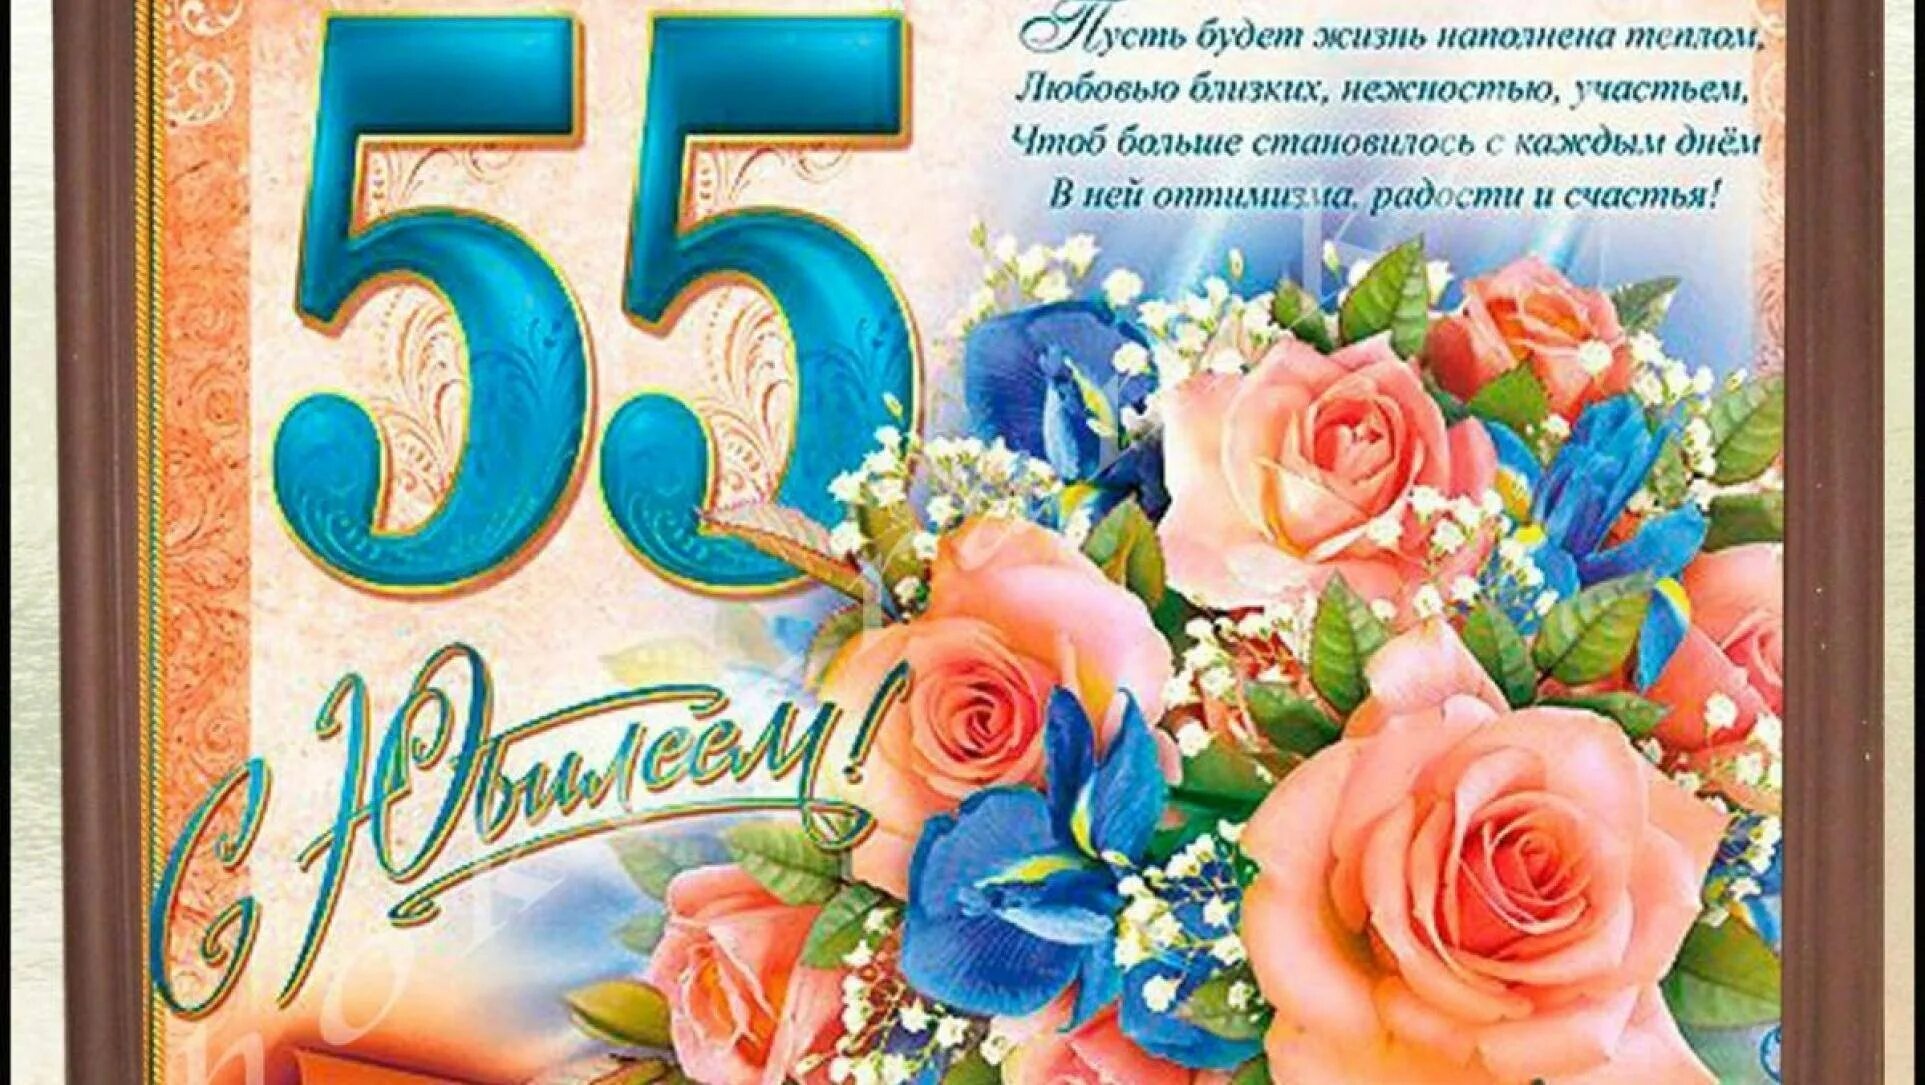 Поздравление с днем рождения женщине коллеге 55. С юбилеем 55. Поздравление с юбилеем 55 женщине. Открытка "с юбилеем! 55". Открытка с юбилеем 55 лет женщине с поздравлением.